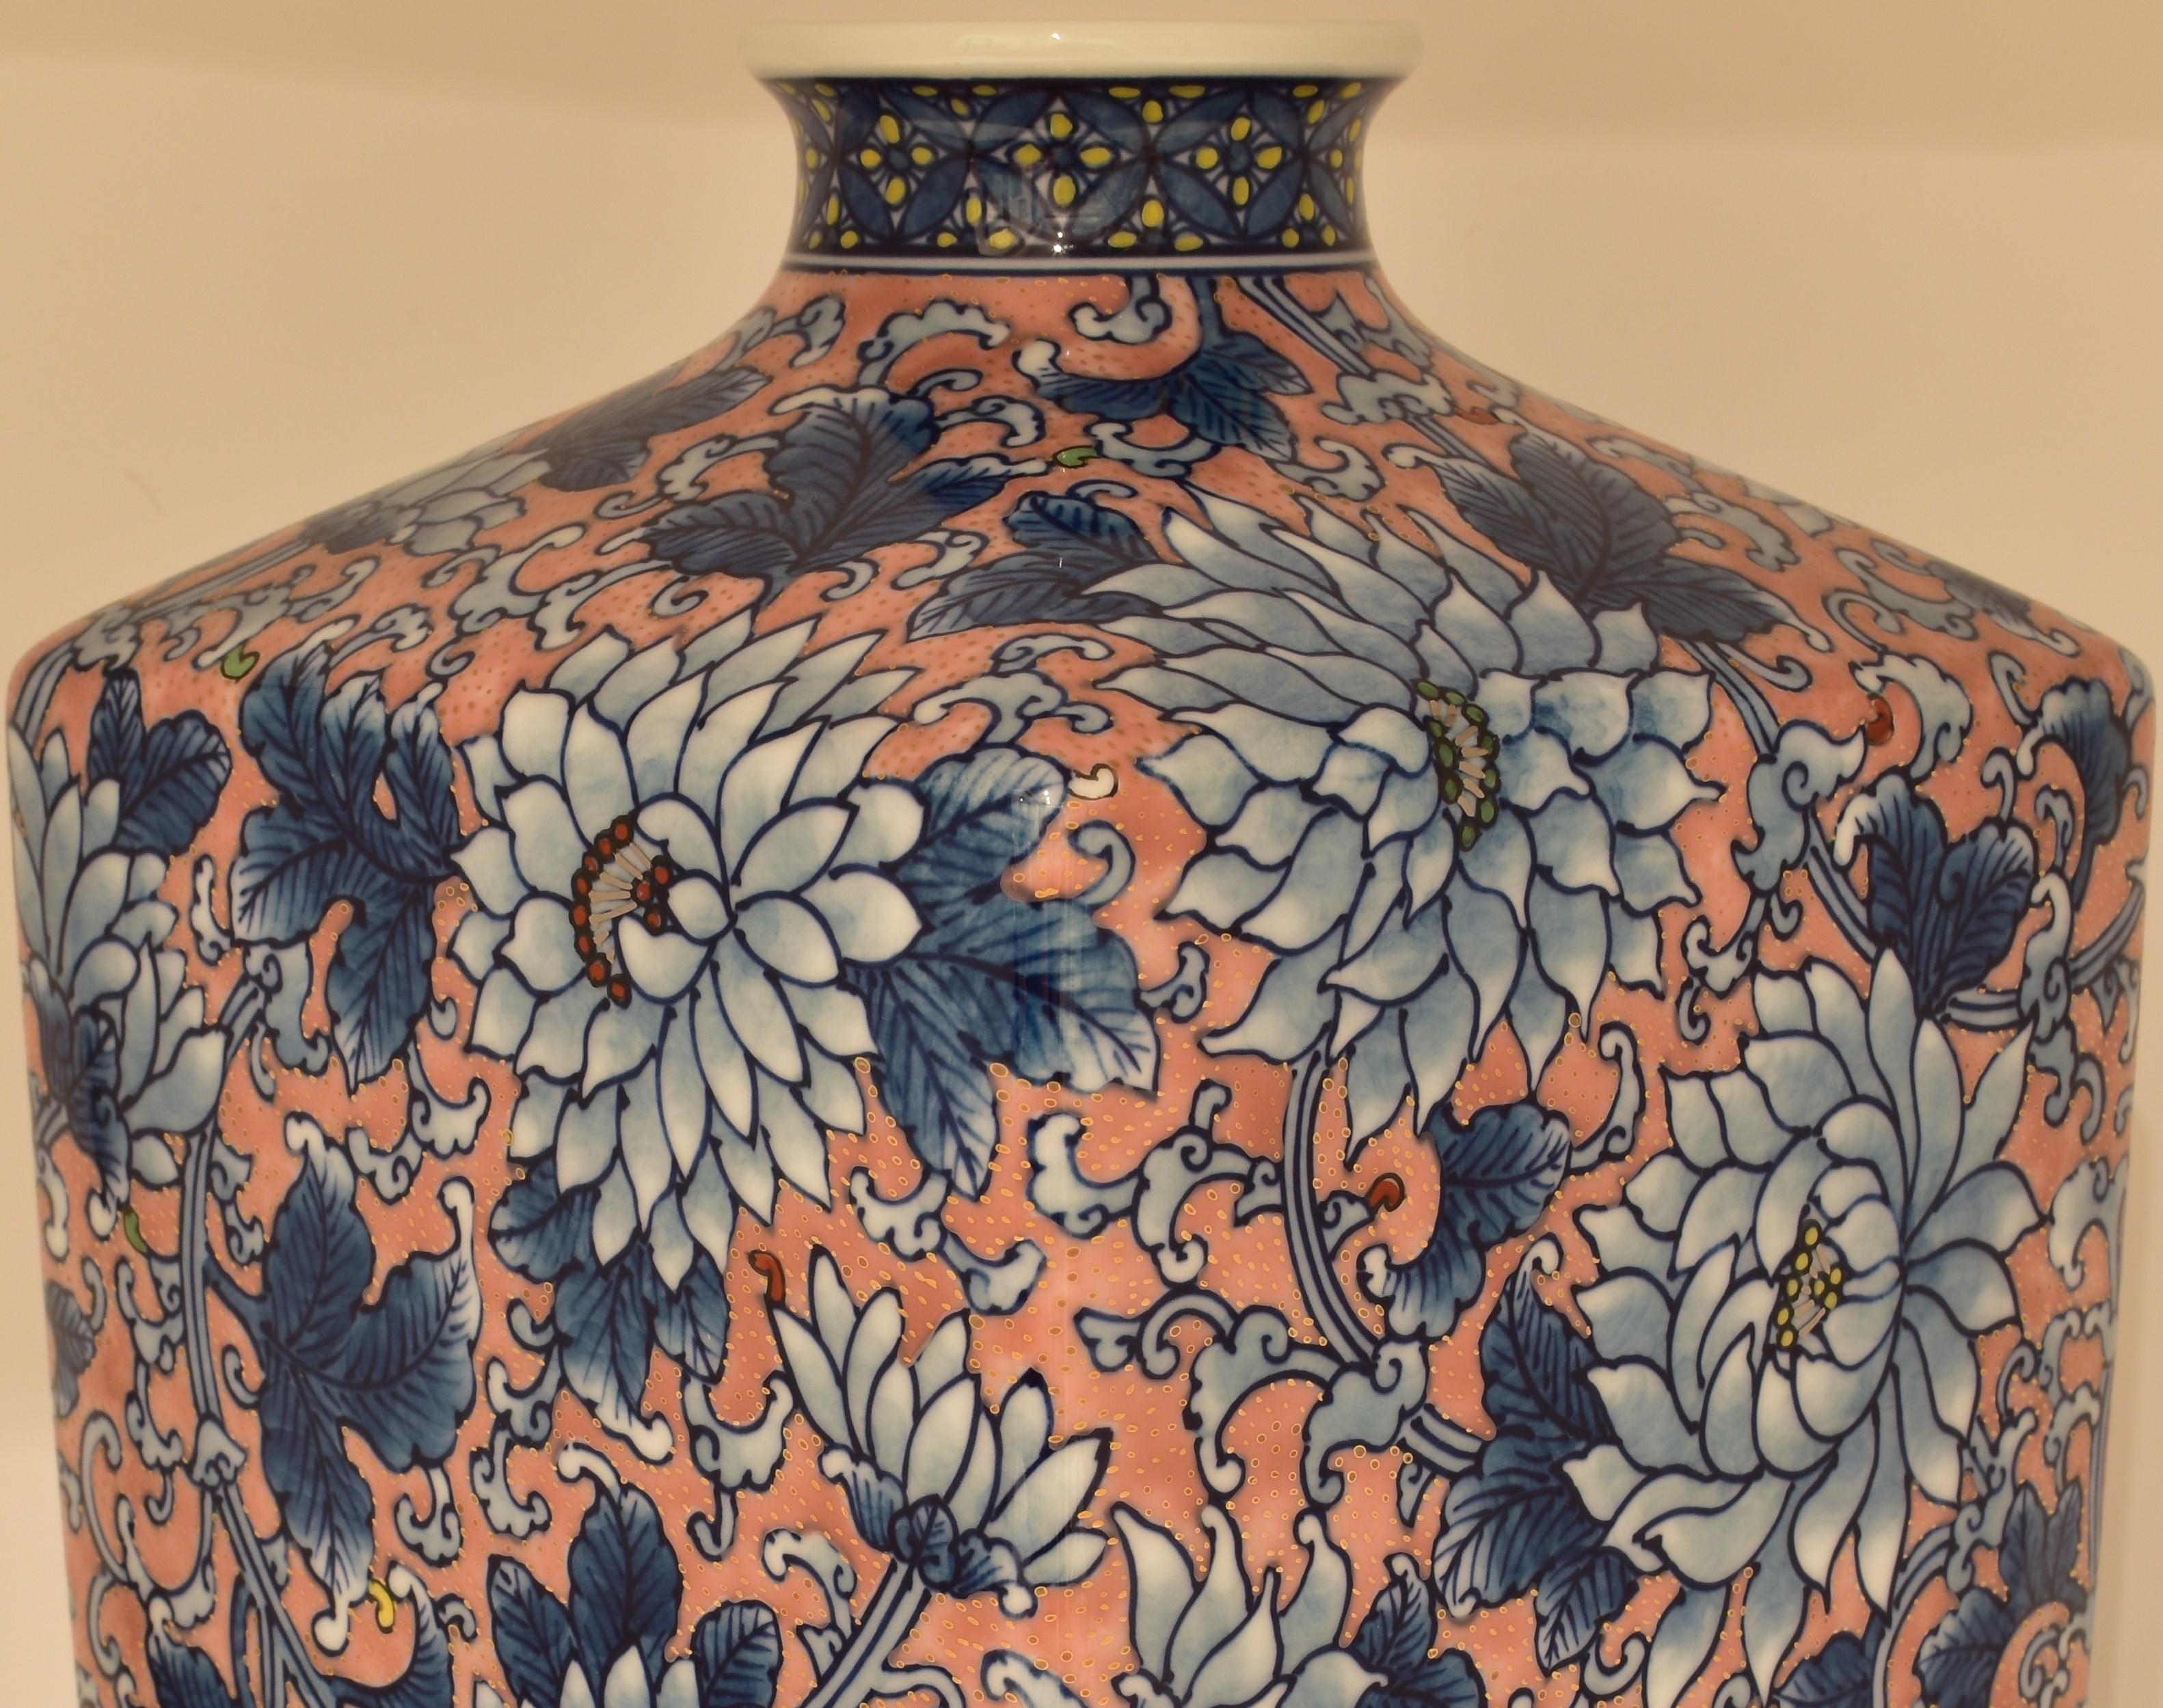 Außergewöhnliche dekorative japanische Vase in Museumsqualität, ein Meisterwerk, das in aufwändiger Handarbeit auf einem rechteckigen Korpus aus feinstem Arita-Porzellan gemalt wurde, der die perfekte Leinwand für ein subtil vergoldetes Feld mit